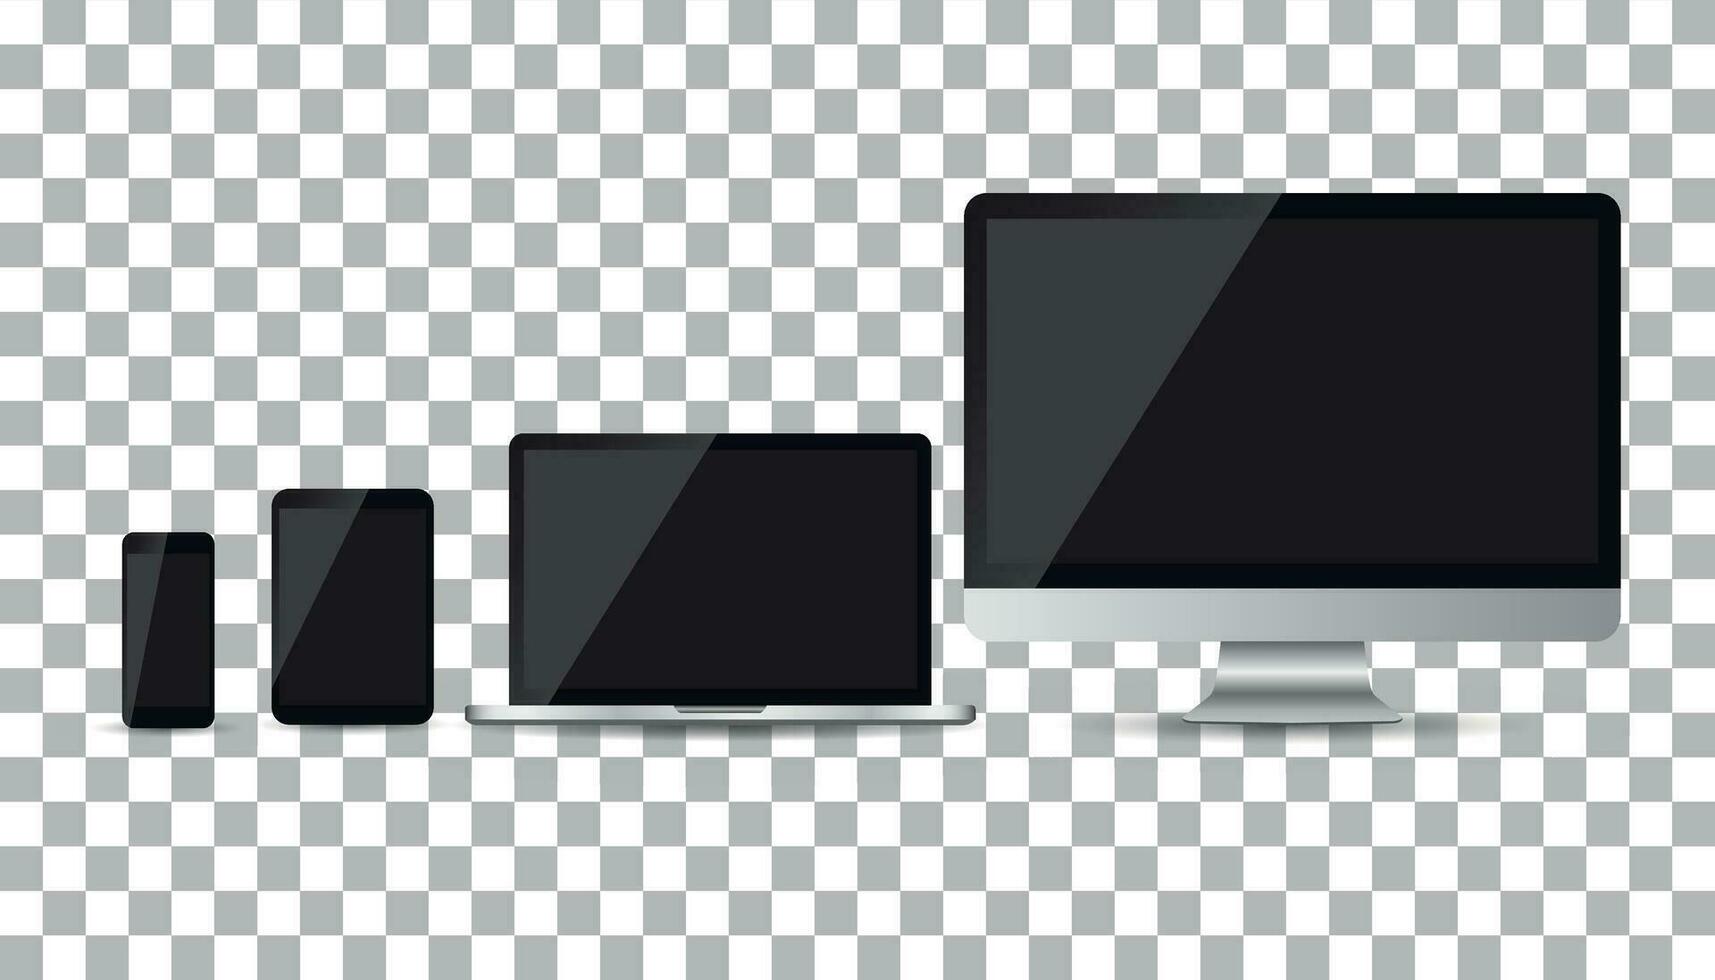 realista dispositivo plano ícones Smartphone, tábua, computador portátil e Área de Trabalho computador. vetor ilustração